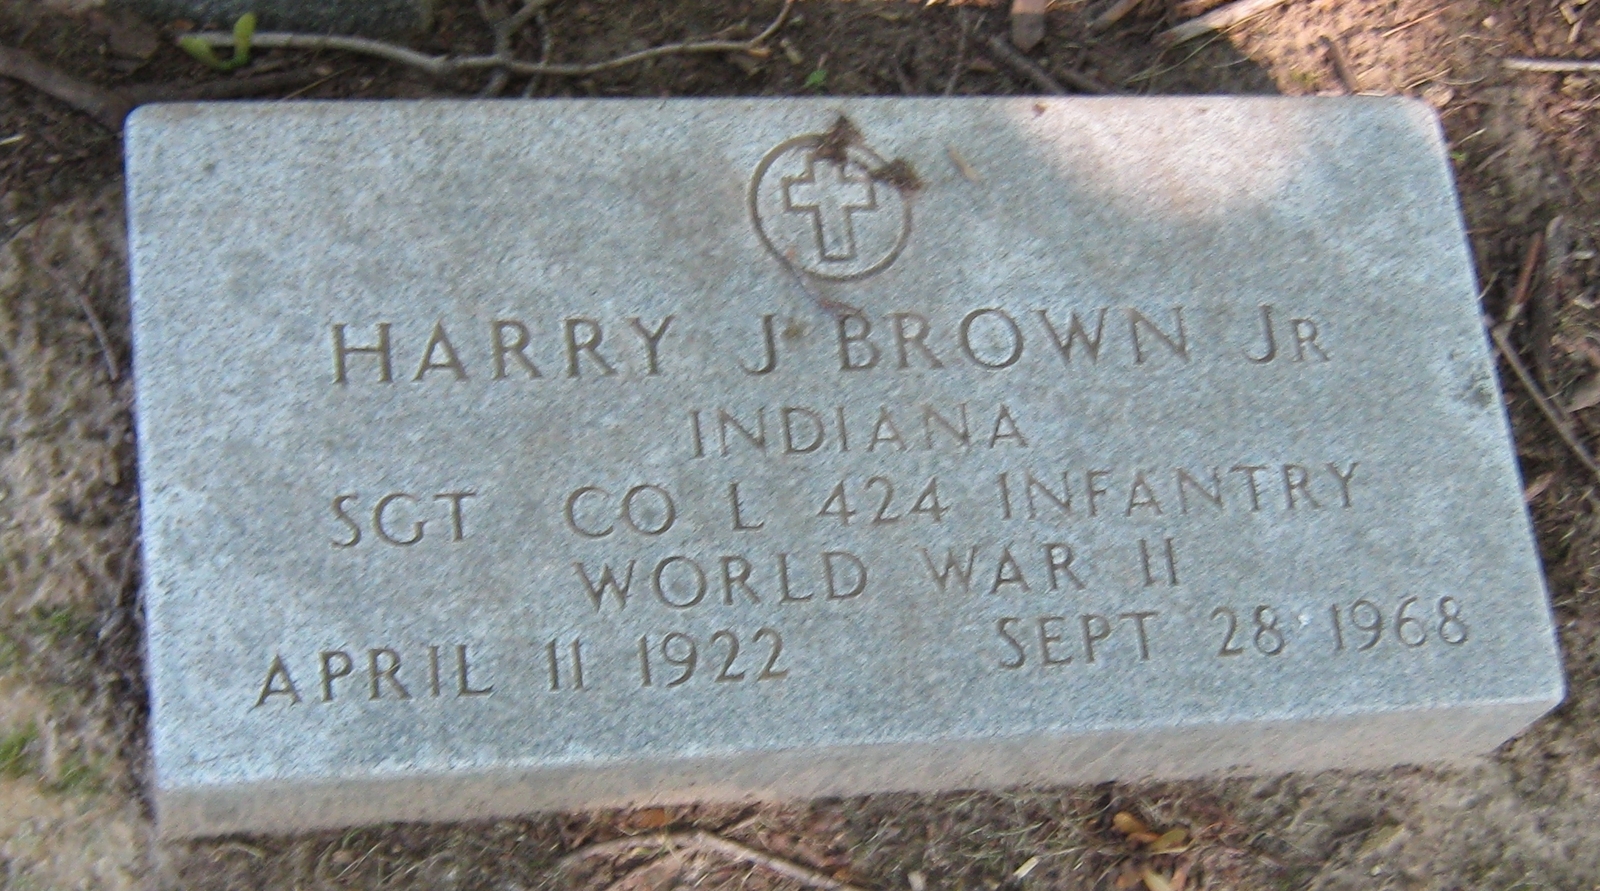 Harry J Brown, Jr